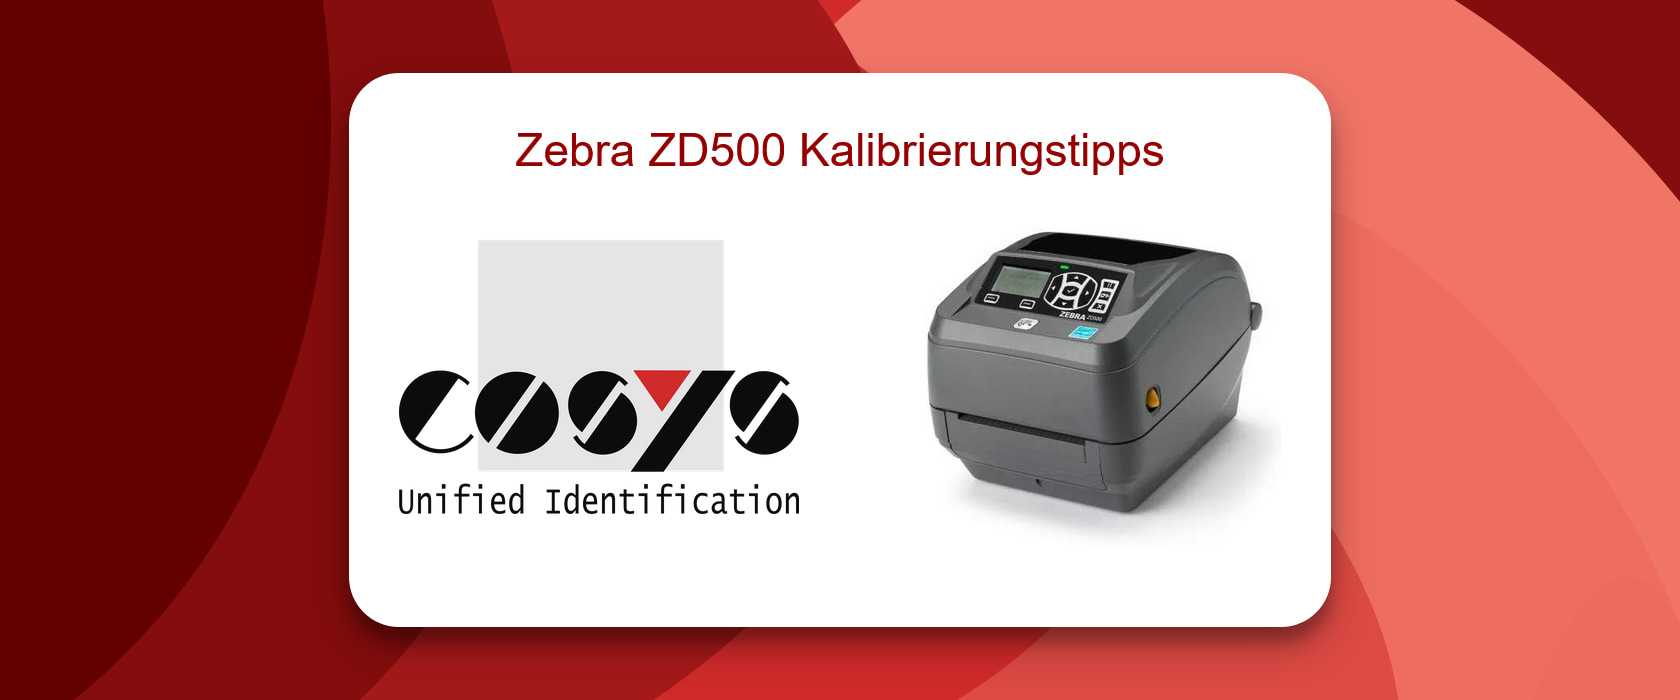 Zebra ZD500 Drucker Kalibrierung